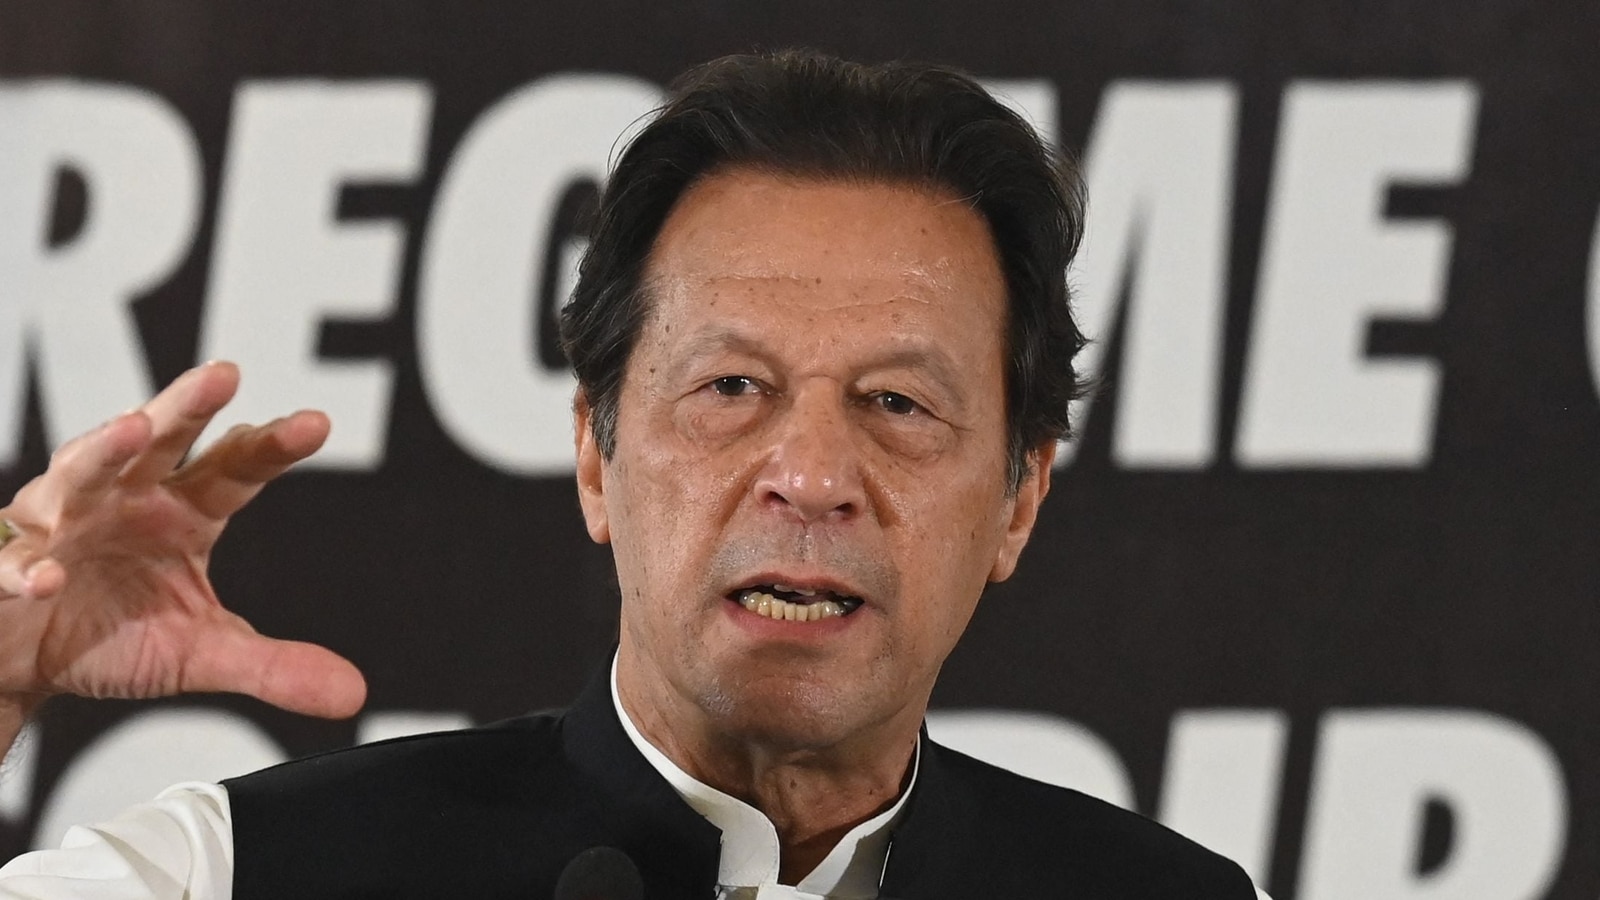 Mantan Perdana Menteri Pakistan Imran Khan menghadapi penangkapan dalam kasus penggalangan dana |  berita Dunia